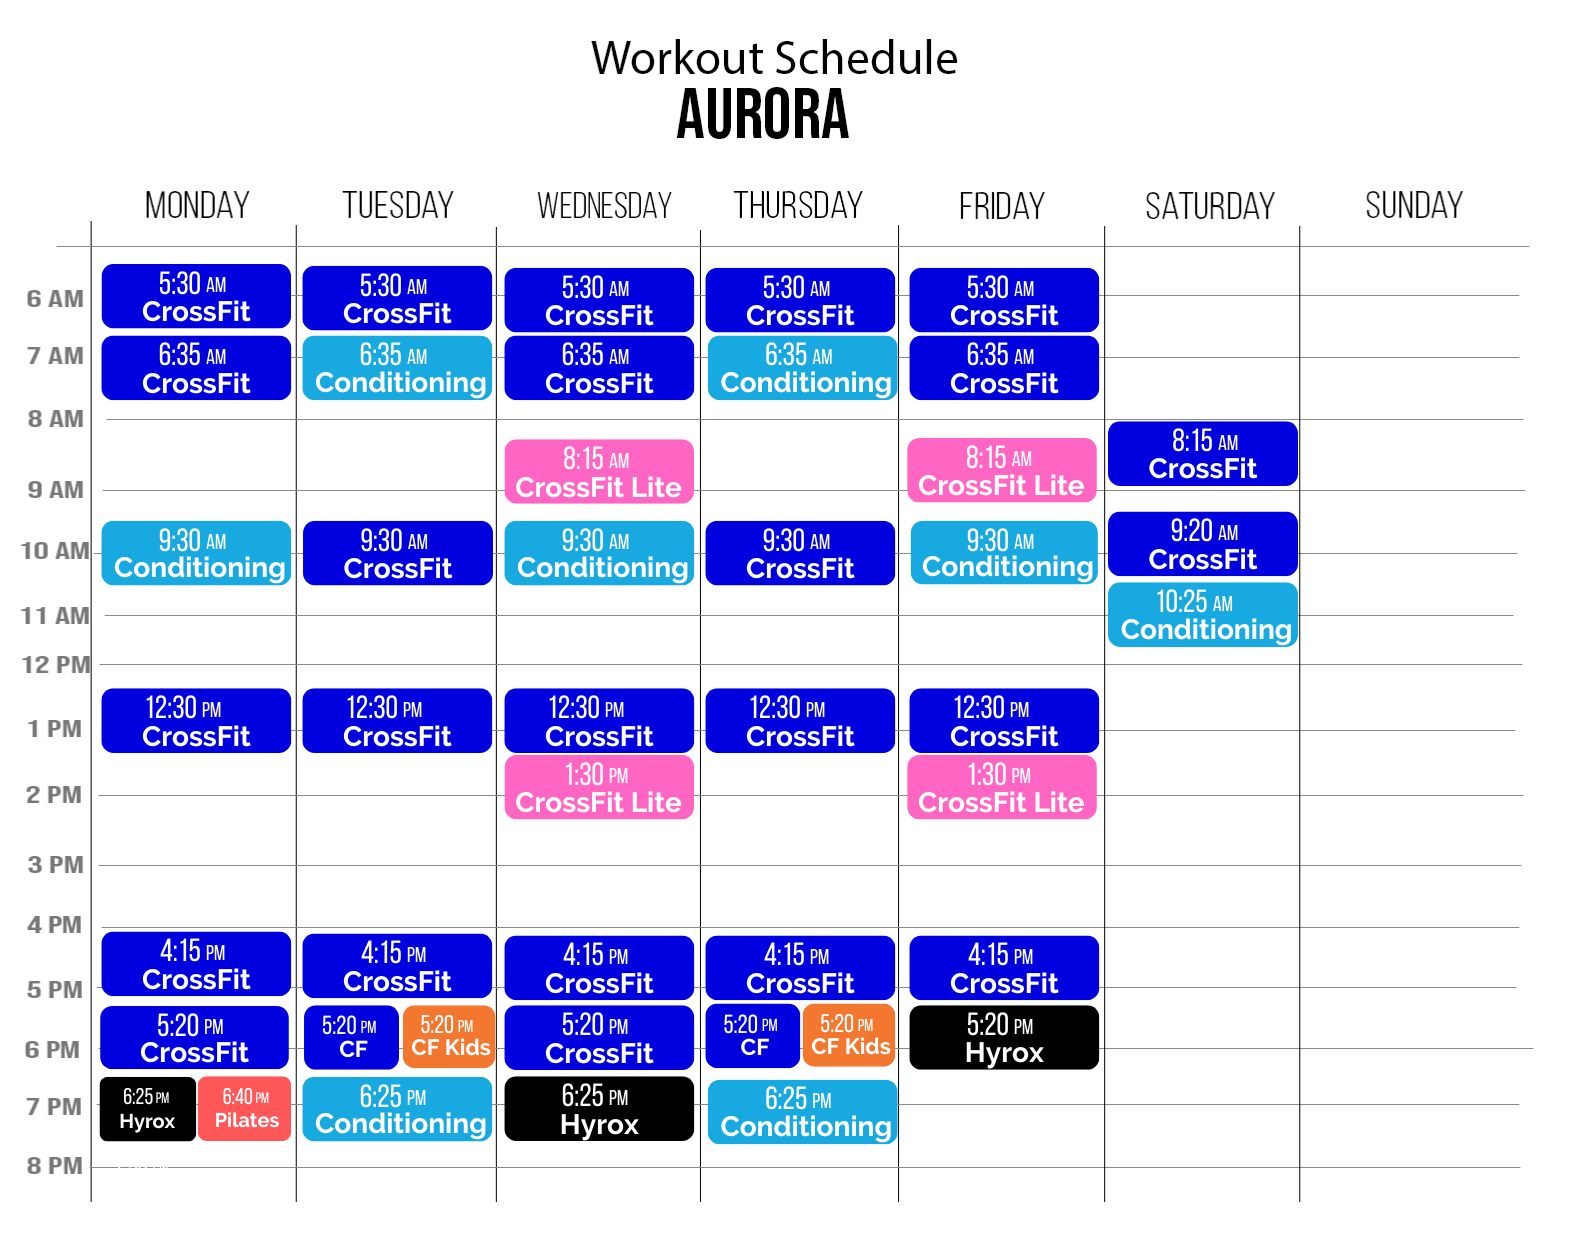 CrossFit Newmarket Central Aurora Workout Schedule